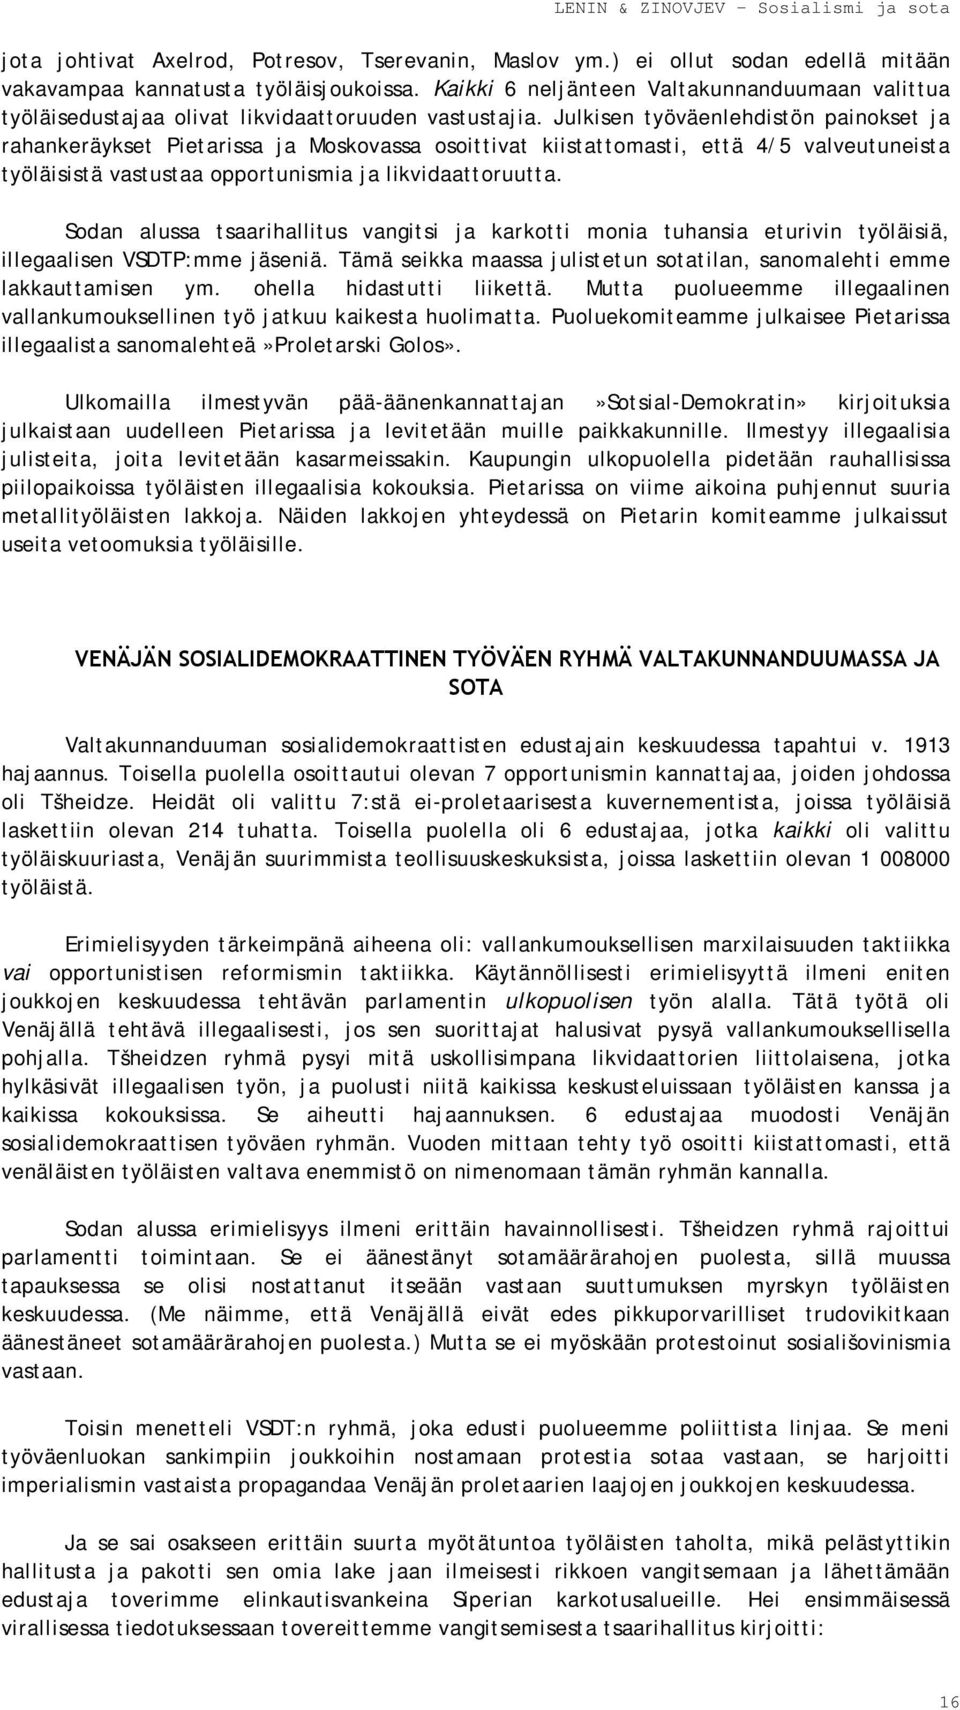 Julkisen työväenlehdistön painokset ja rahankeräykset Pietarissa ja Moskovassa osoittivat kiistattomasti, että 4/5 valveutuneista työläisistä vastustaa opportunismia ja likvidaattoruutta.